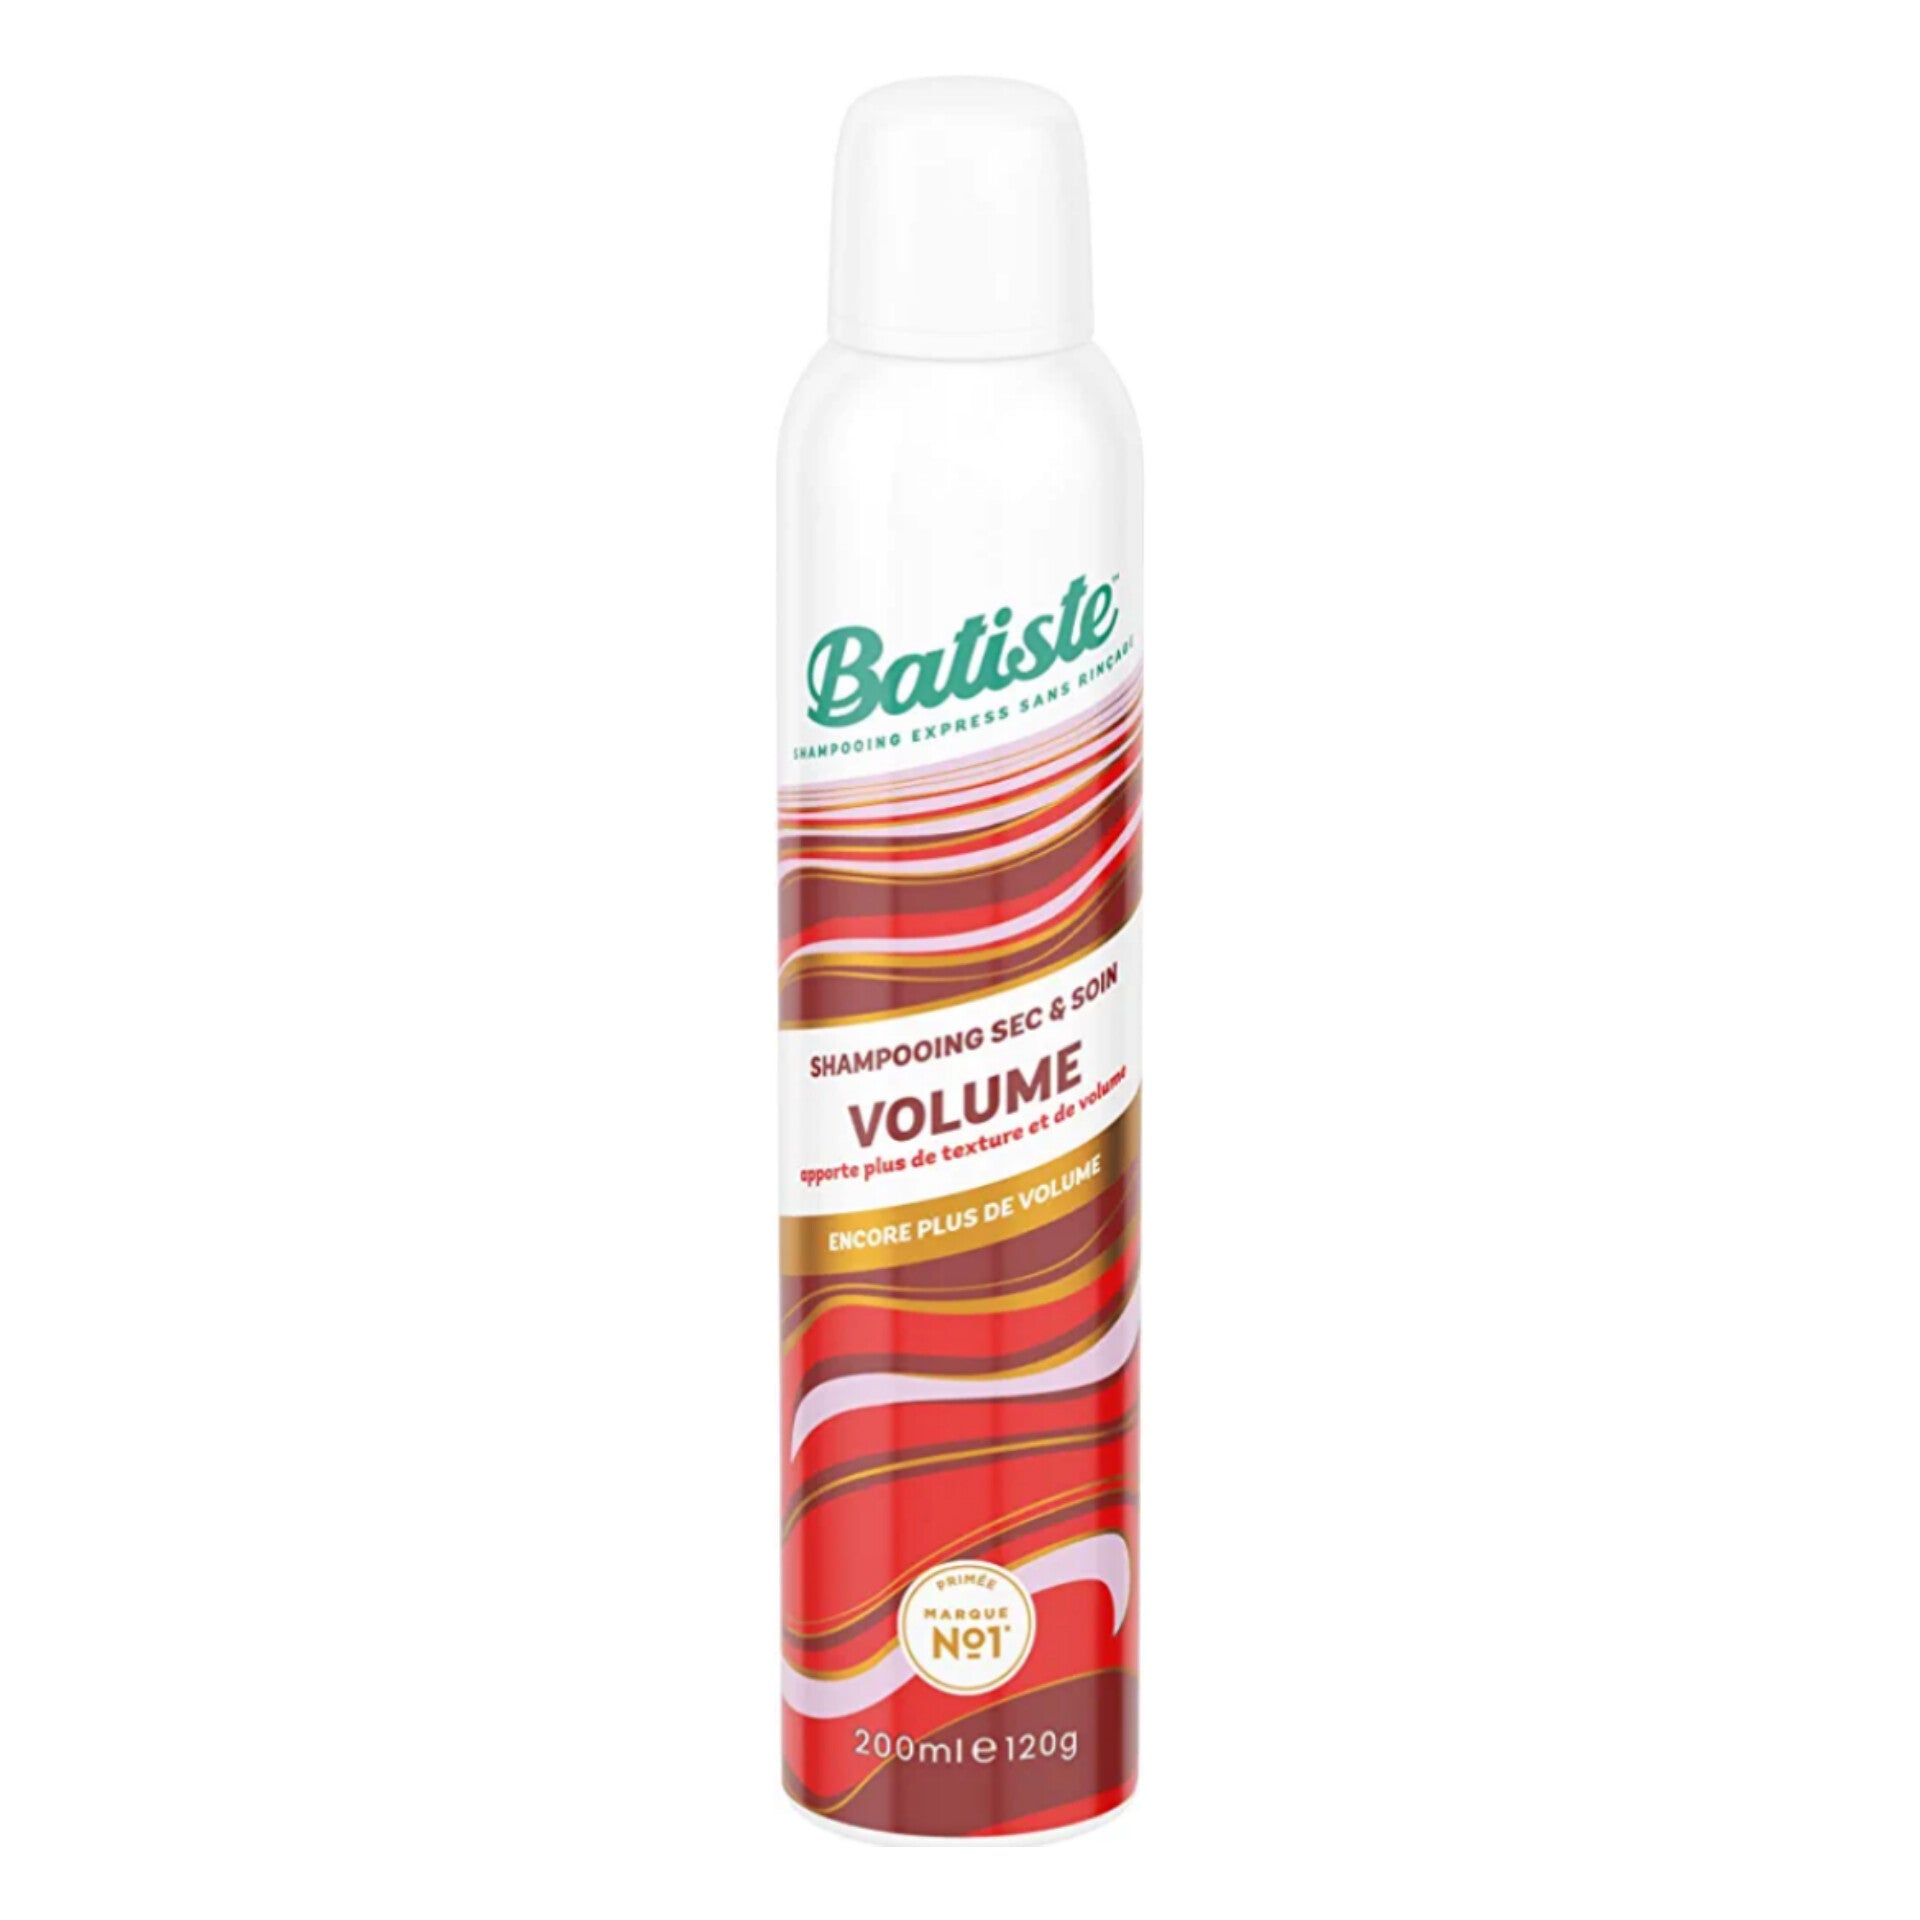 batiste-shampooing-sec-volume-200ml